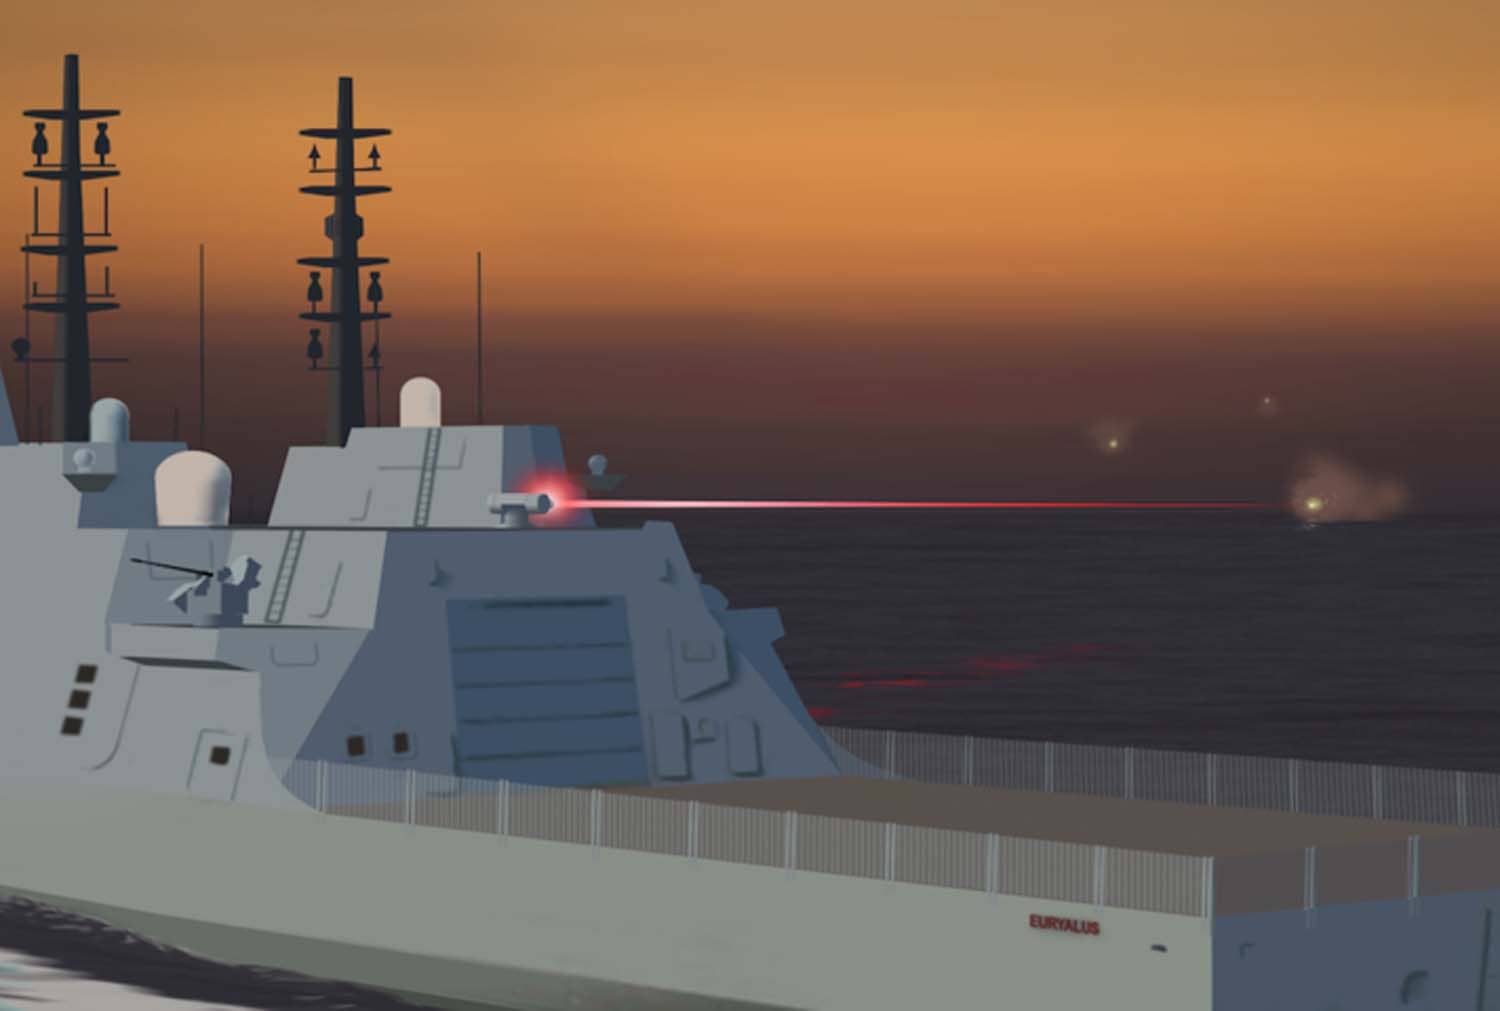 Türk Deniz Kuvvetleri Lazer Elektronik Taarruz Sistemi envanterine kattı.